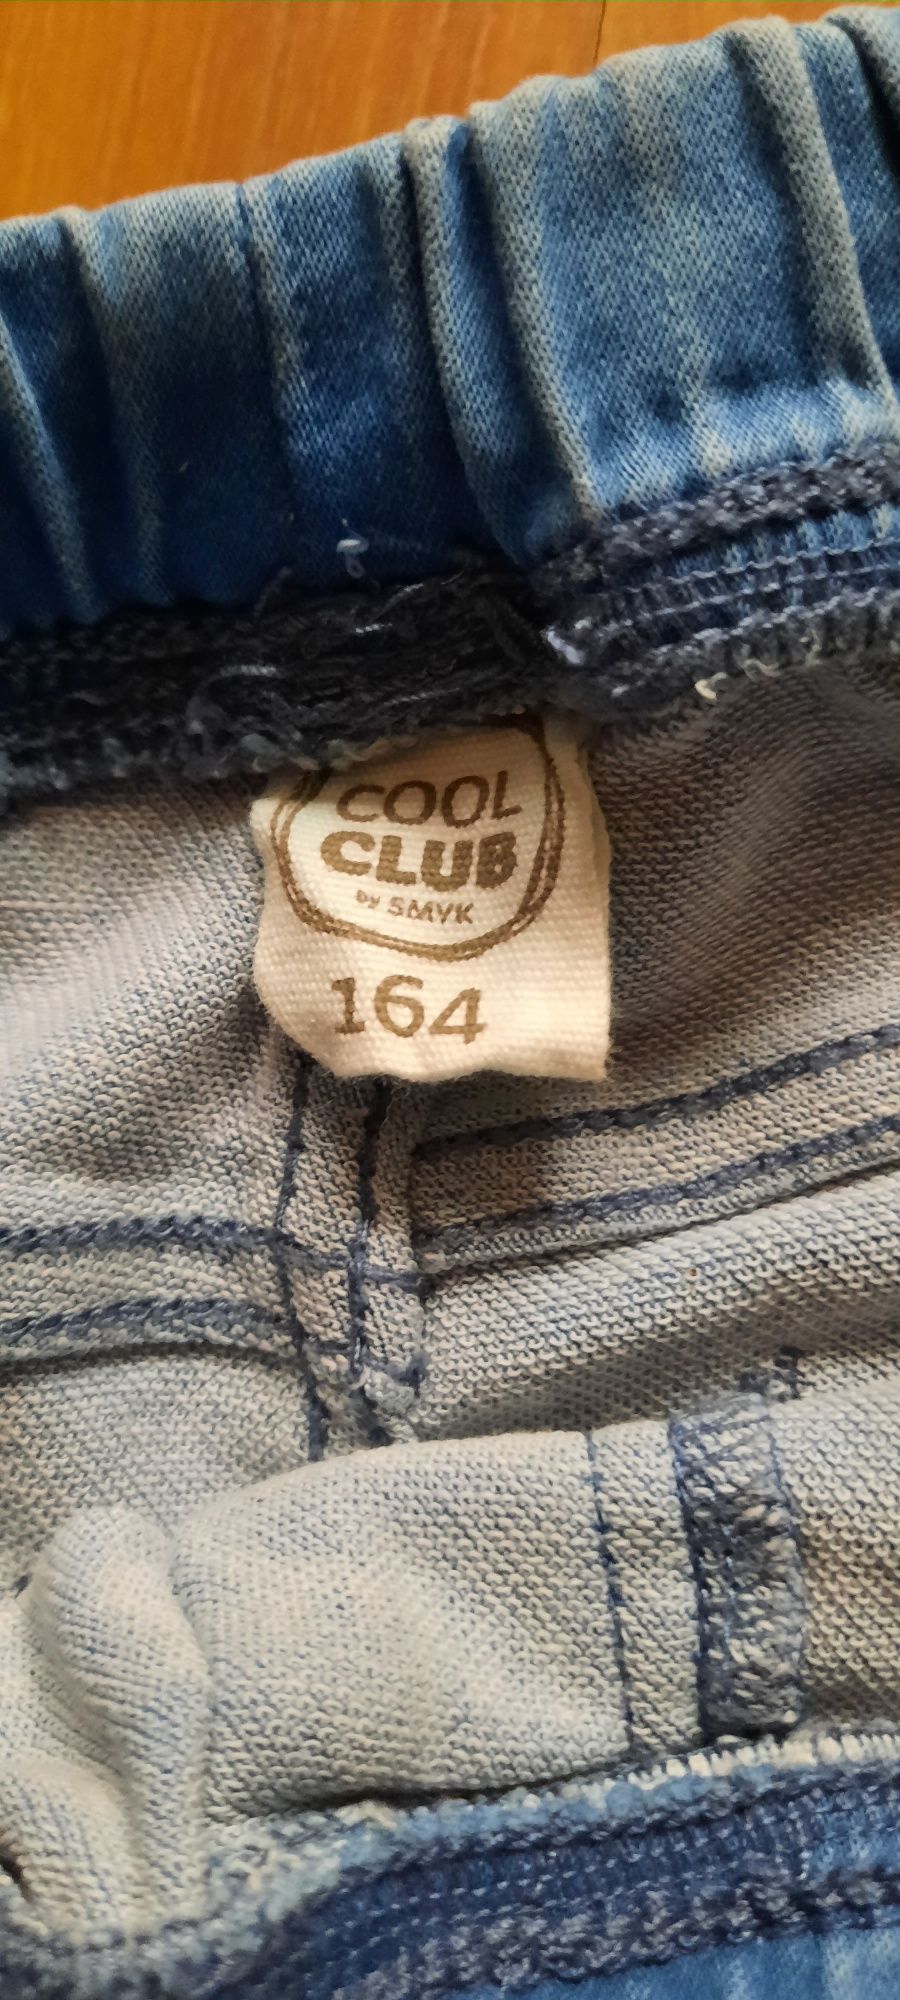 Spodnie dziewczęce Cool - Club roz - 164